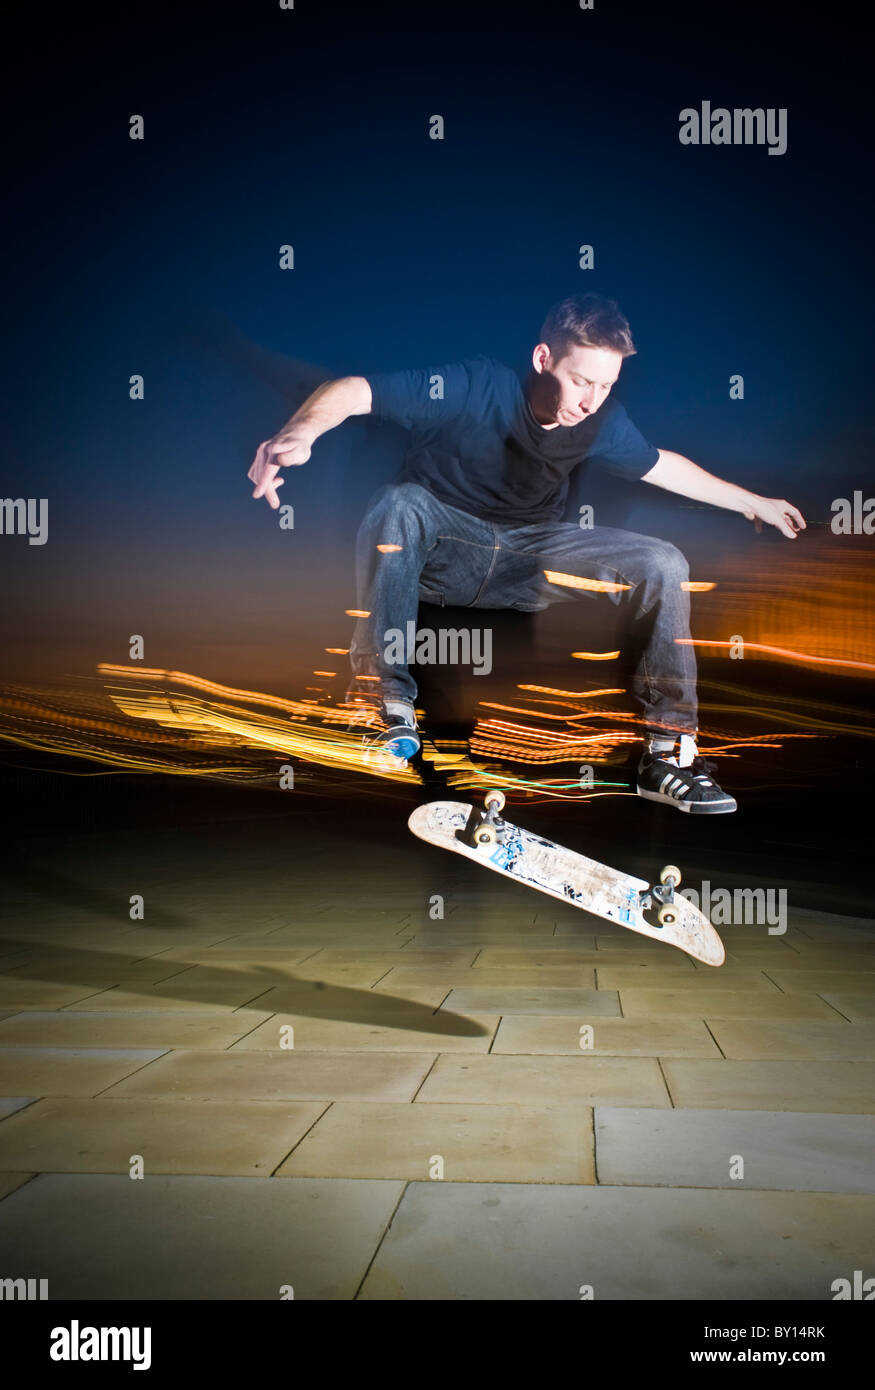 La planche, Skateboard, Flip,city, Londres, lumières,lumière, lumière de  rue, ciel de nuit, nuit, fun Photo Stock - Alamy